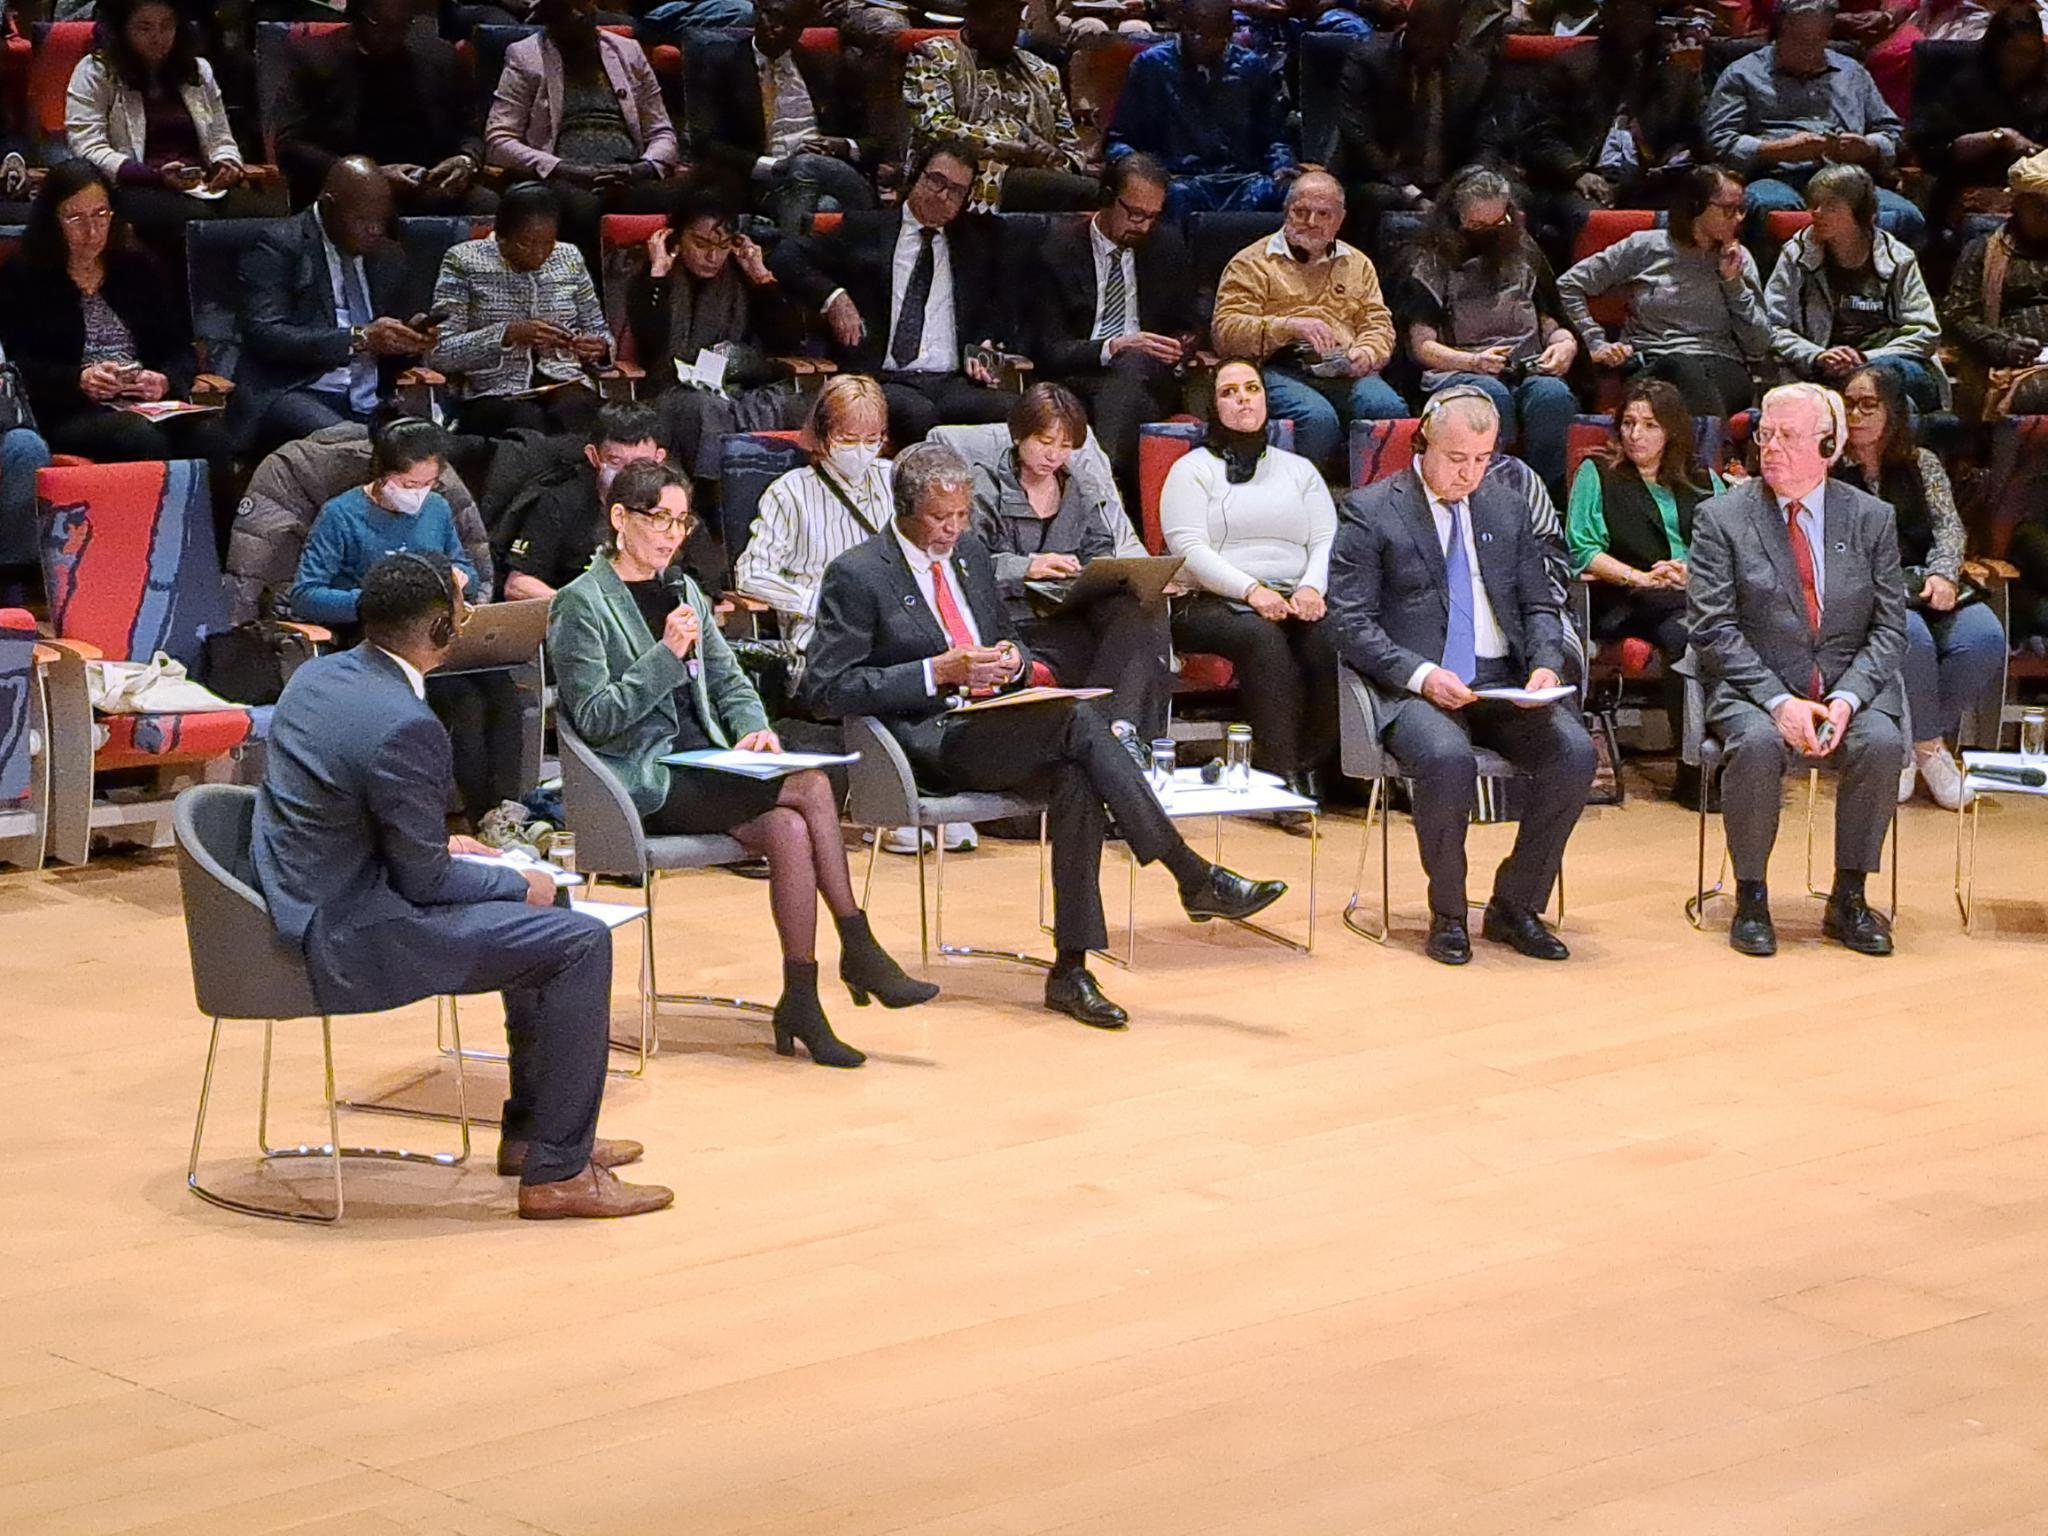 Bà Bộ trưởng Ngoại giao Vương Quốc Bỉ Hadja Lahbib (thứ nhì, từ trái) phát biểu trong Đại Hội Thế Giới Chống Án Tử Hình kỳ 8 tại Berlin, Đức Quốc. Ảnh: Việt Tân Đức Quốc